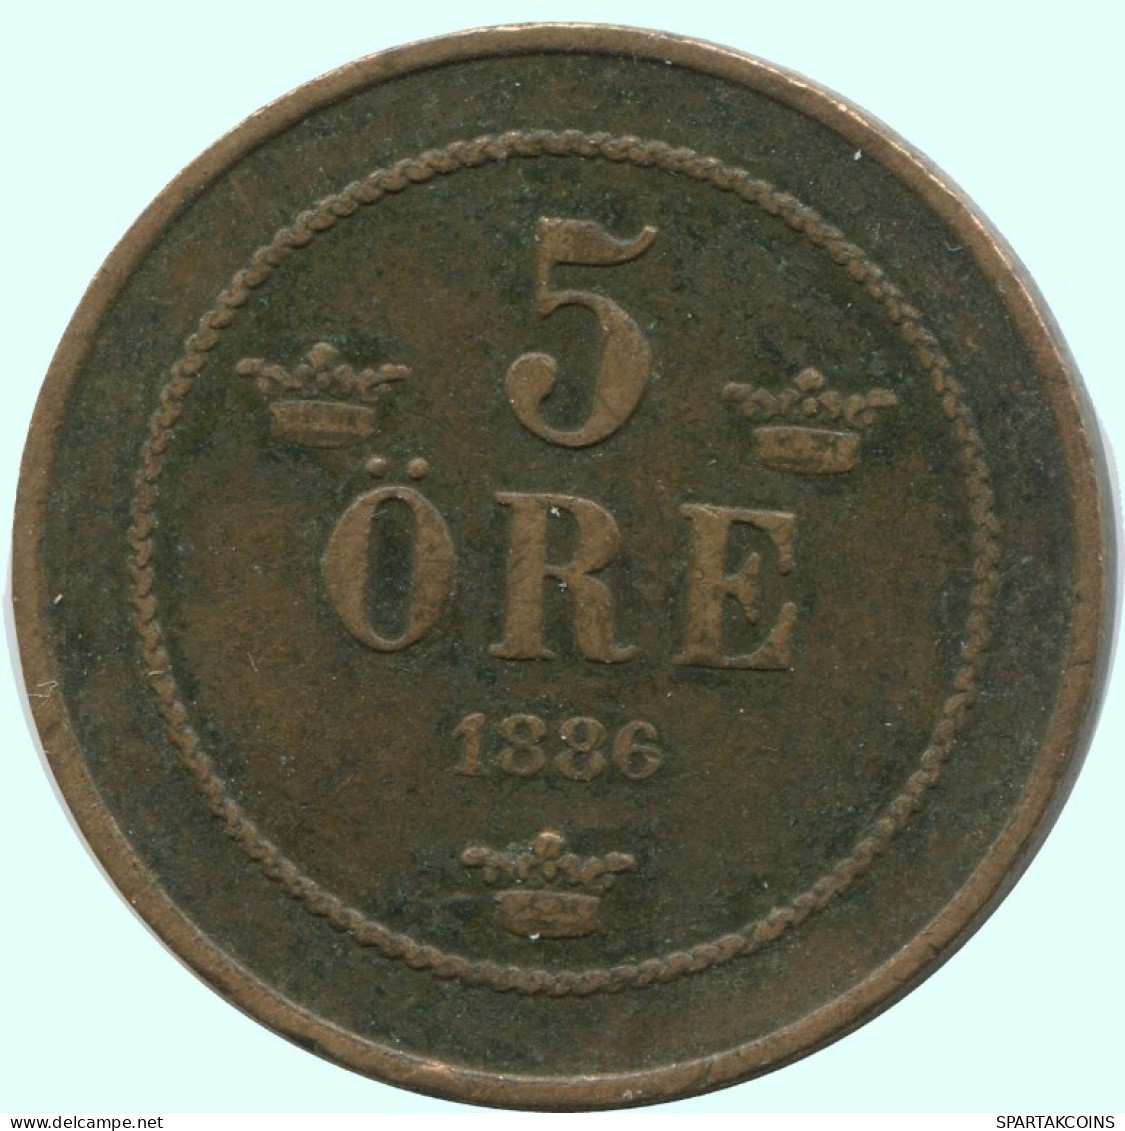 5 ORE 1886 SWEDEN Coin #AC612.2.U.A - Suède